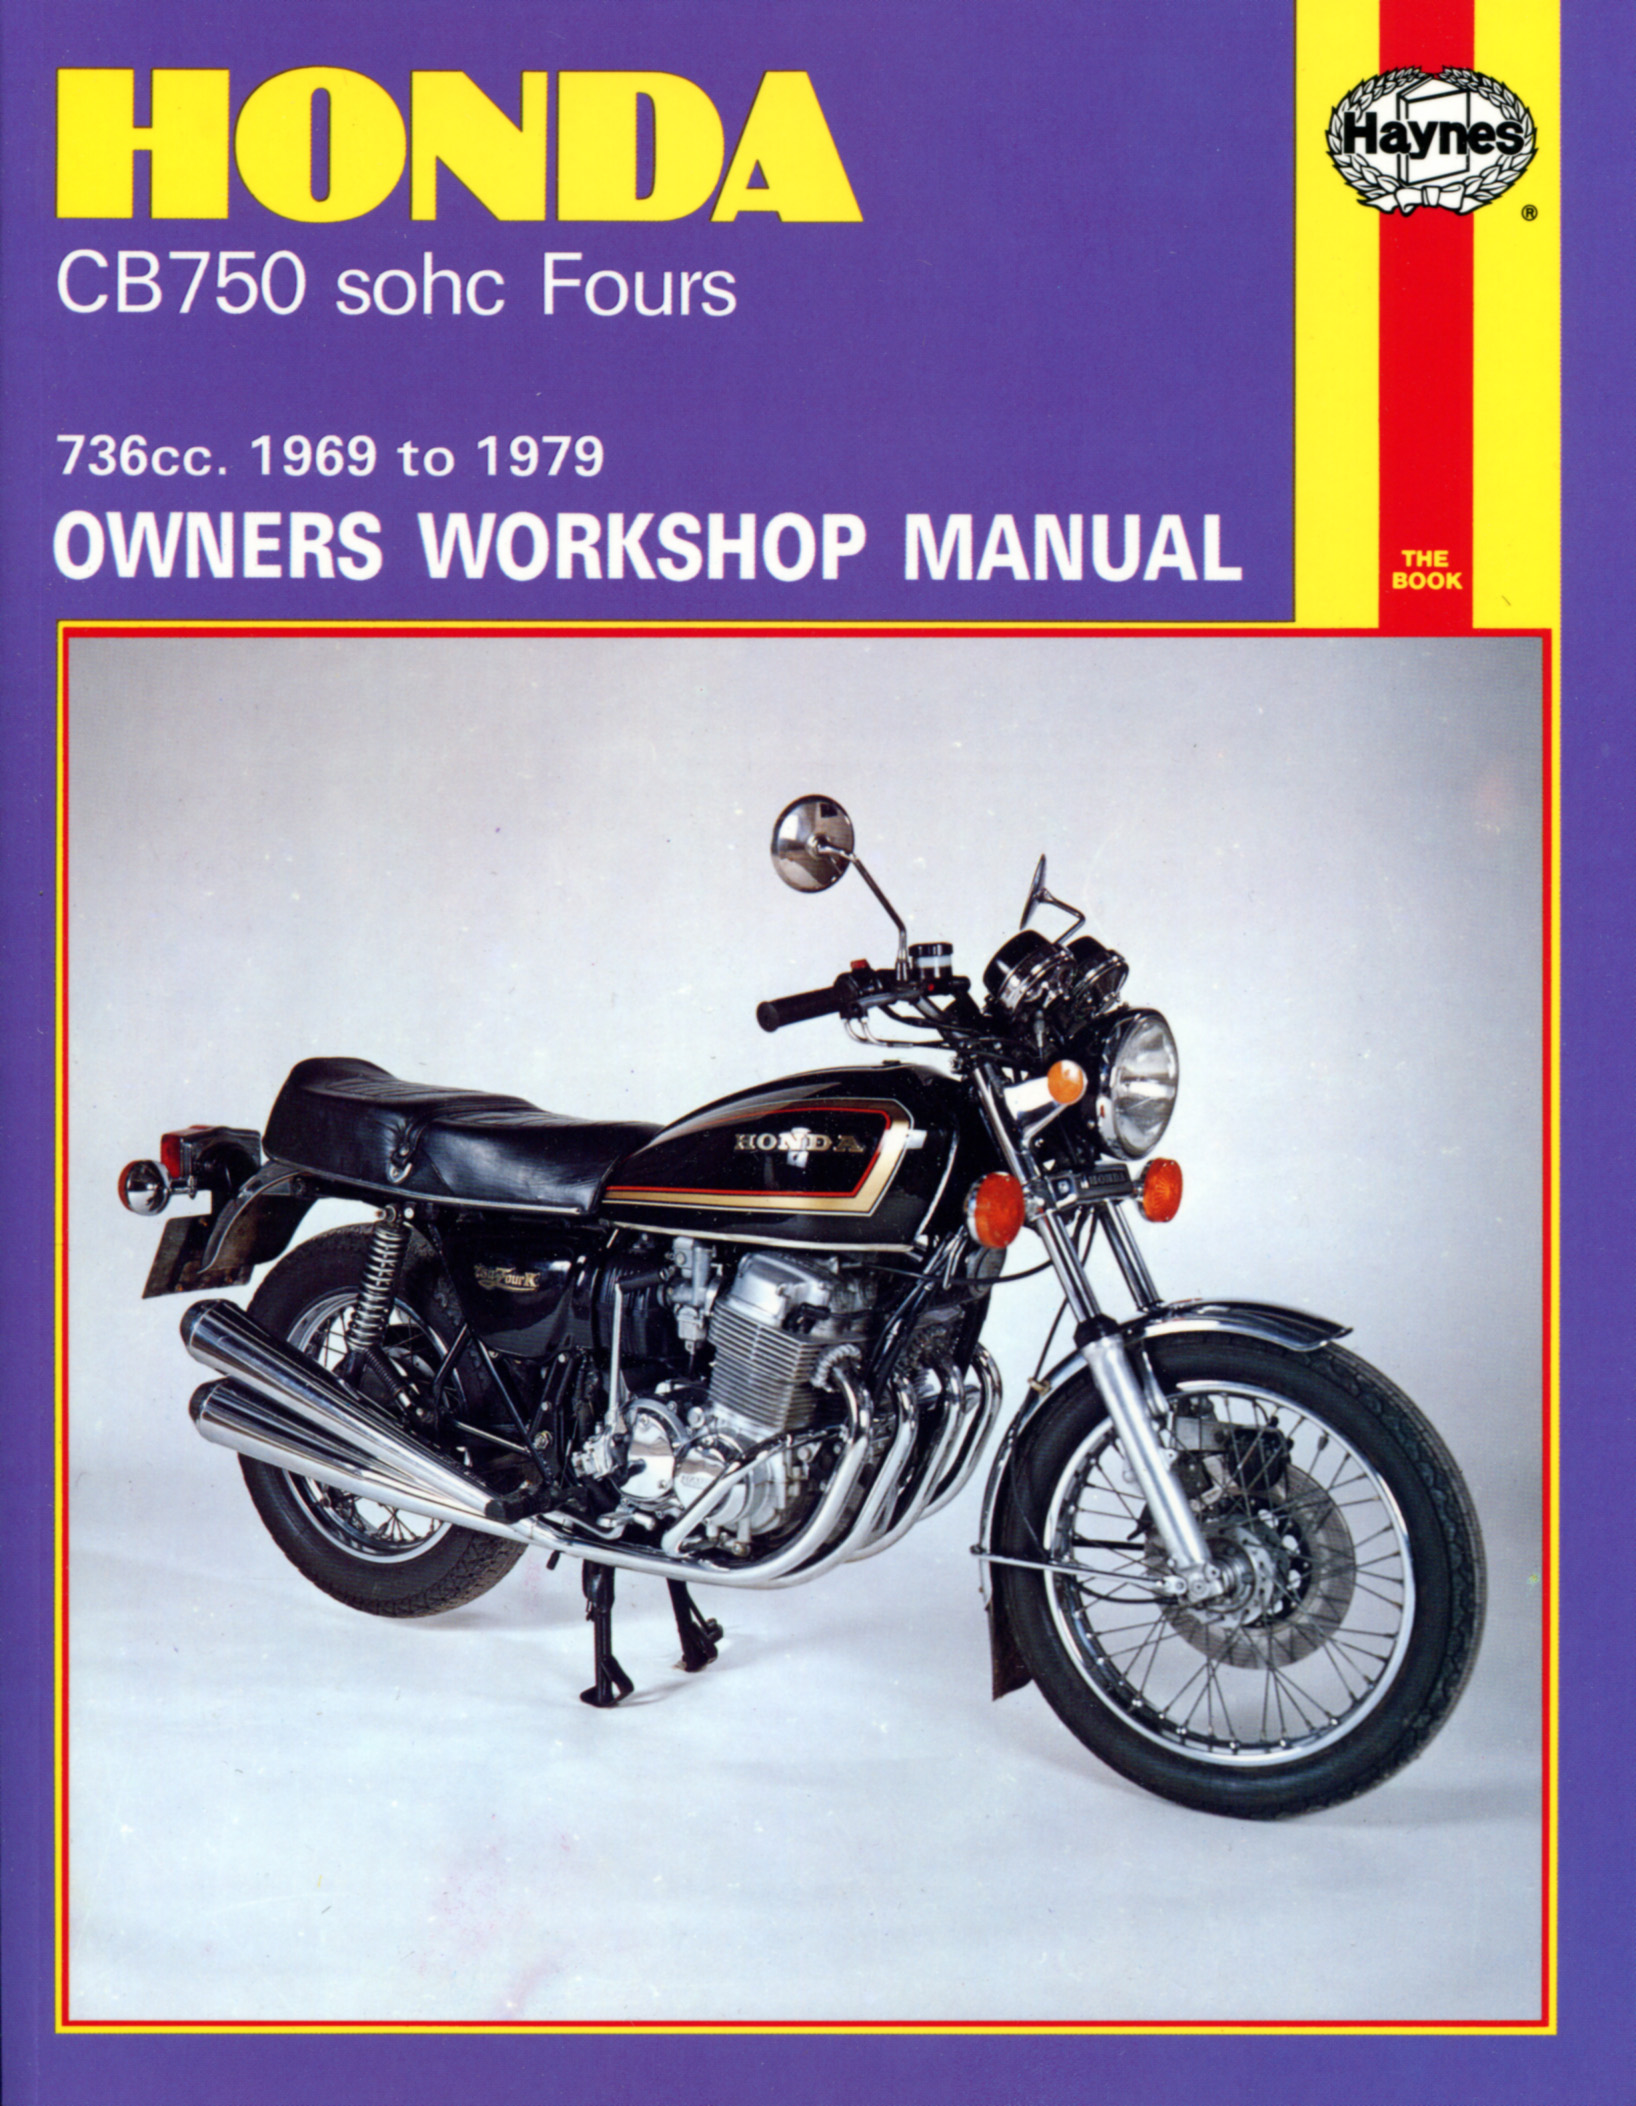 Honda cb750 restoration book